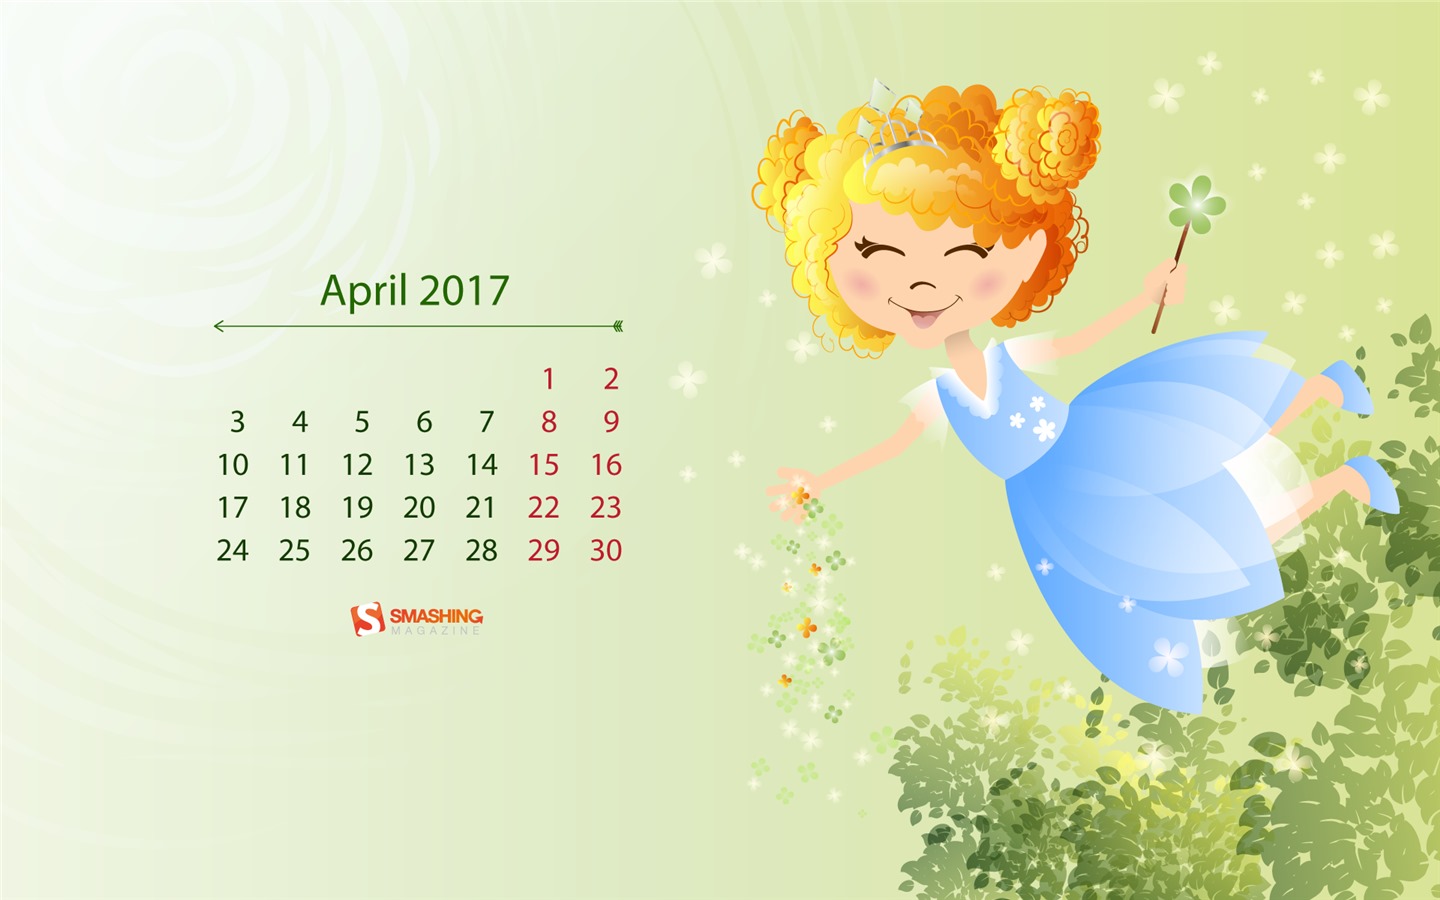 April 2017 calendar wallpaper (2) #11 - 1440x900